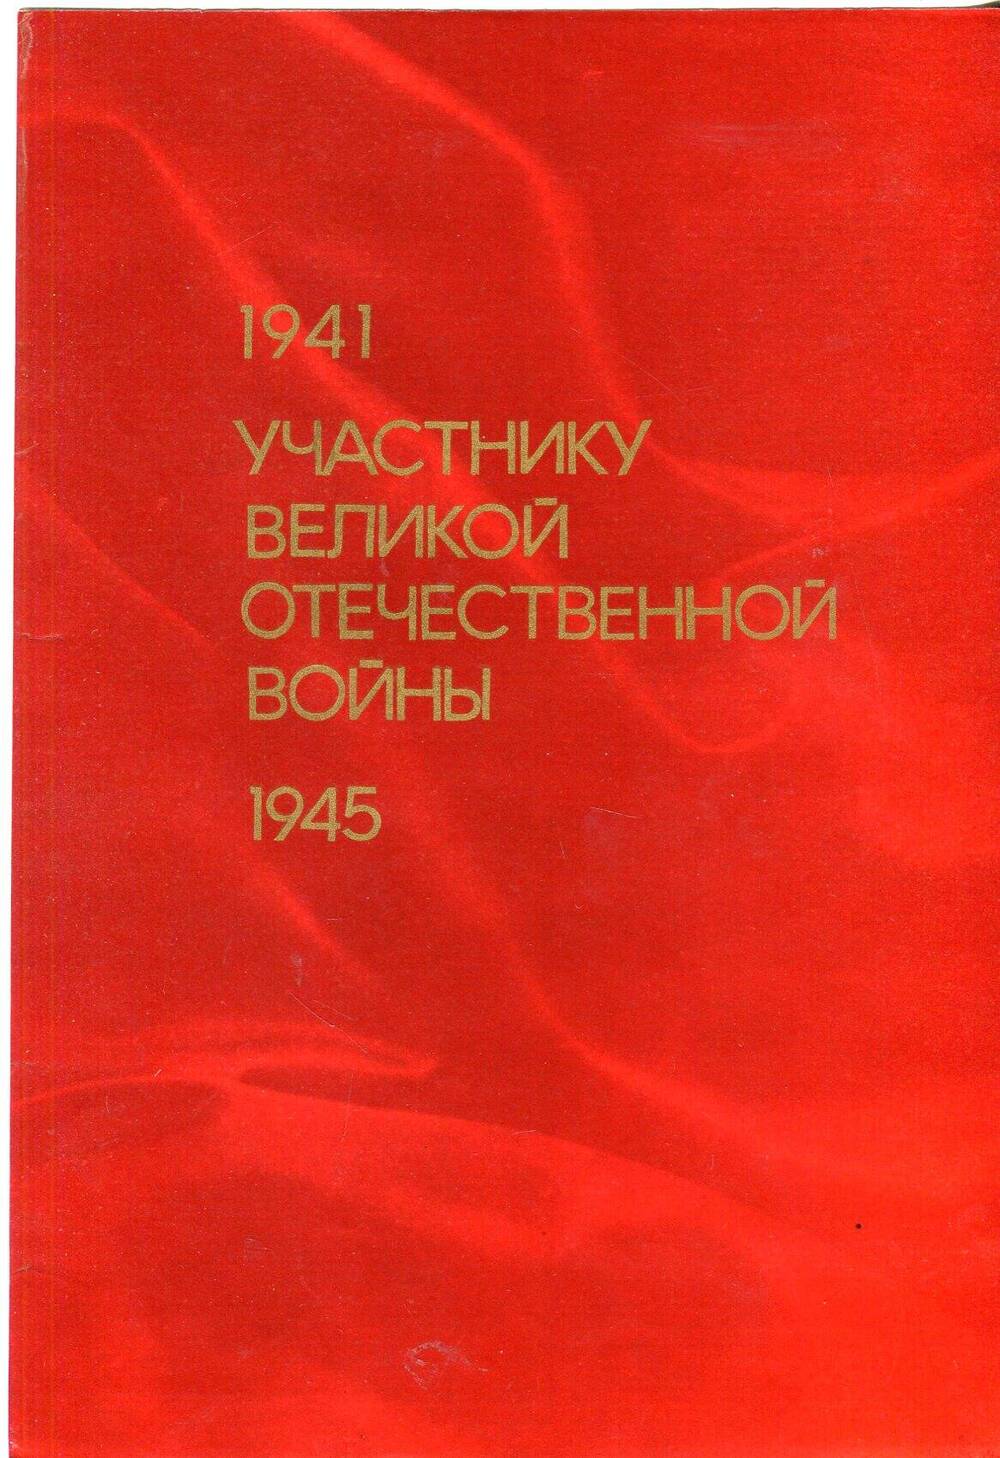 Благодарственное письмо Ендовицкому Ивану Дмитриевичу с поздравлением 40-летия Победы советского народа в Велиикой Отечественной войне.